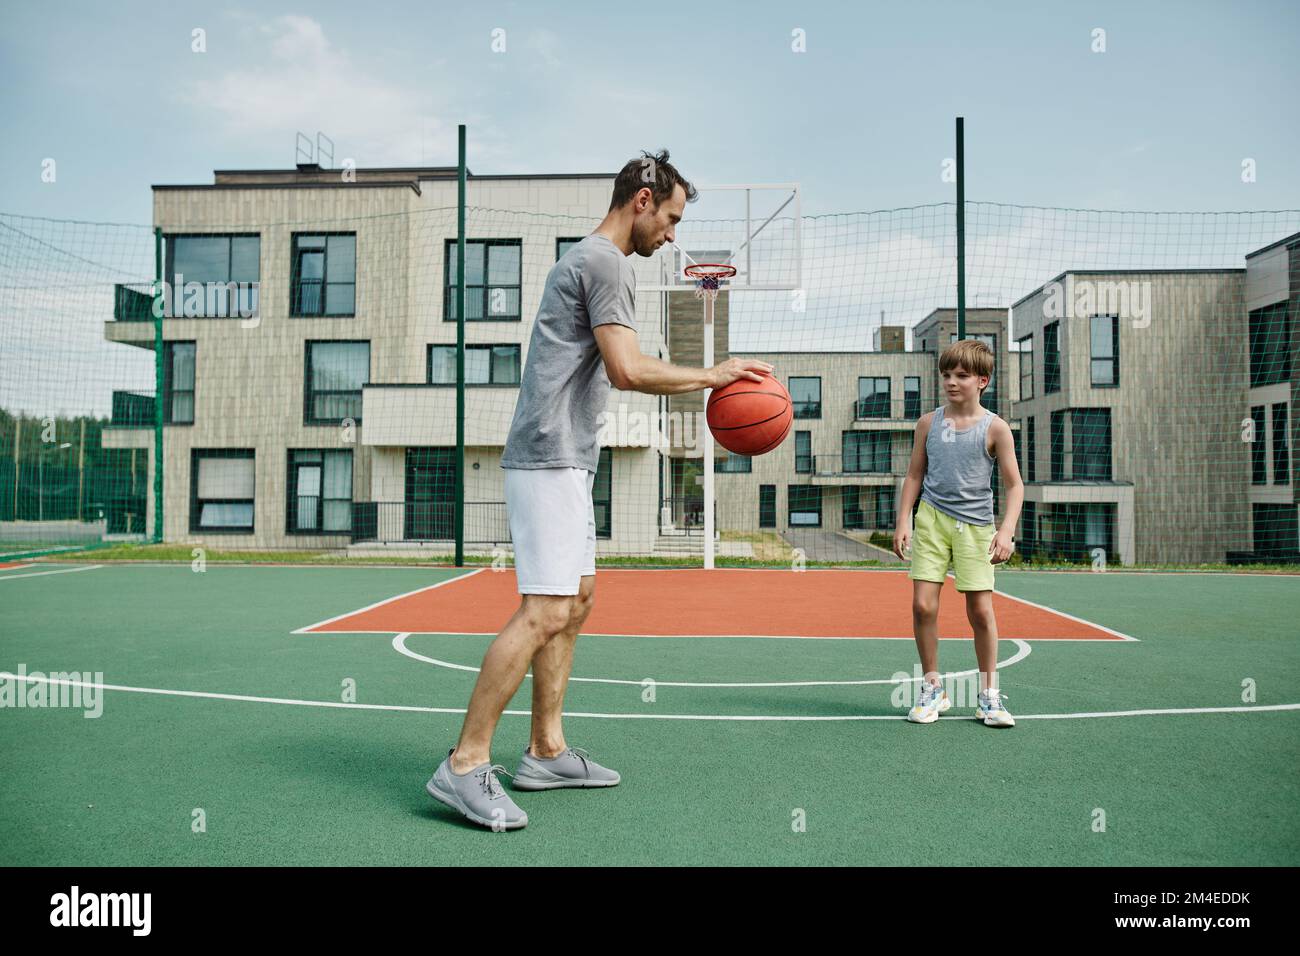 Ganzkörperporträt von Vater und Sohn, die gemeinsam im Freien Basketball spielen, in einem modernen Wohnkomplex Stockfoto